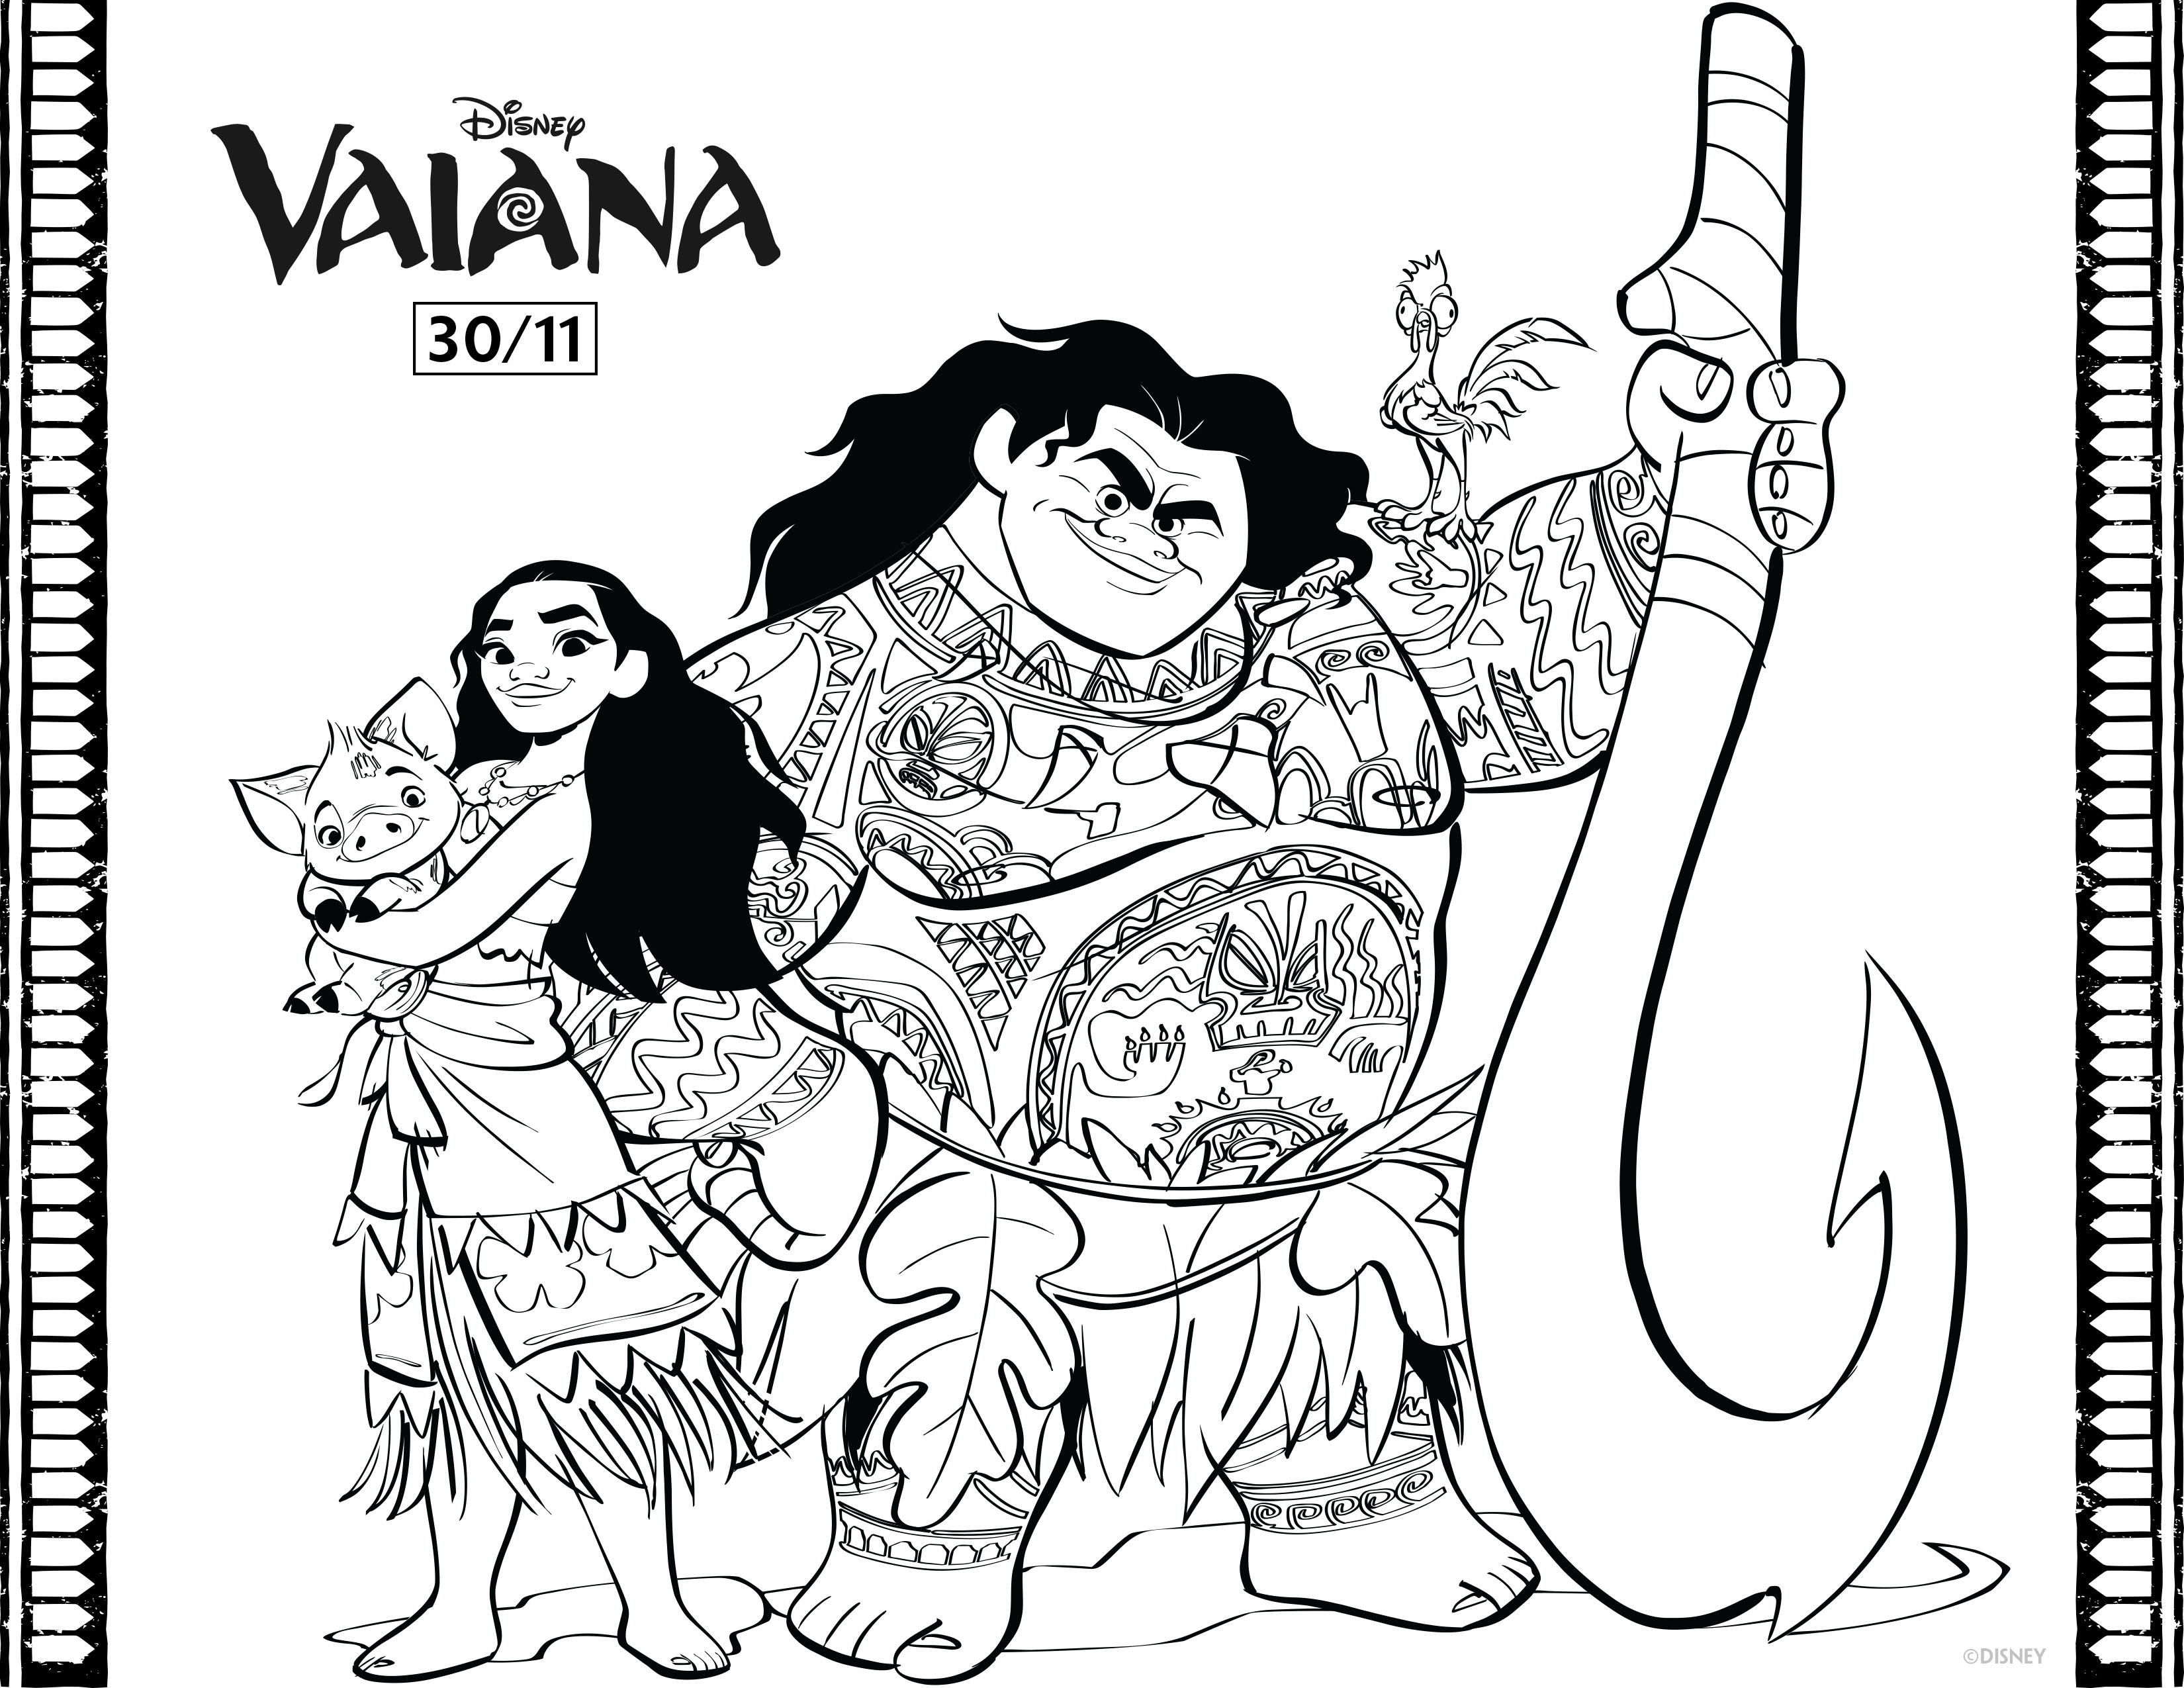 Vaiana e Maui, os novos heróis da Disney